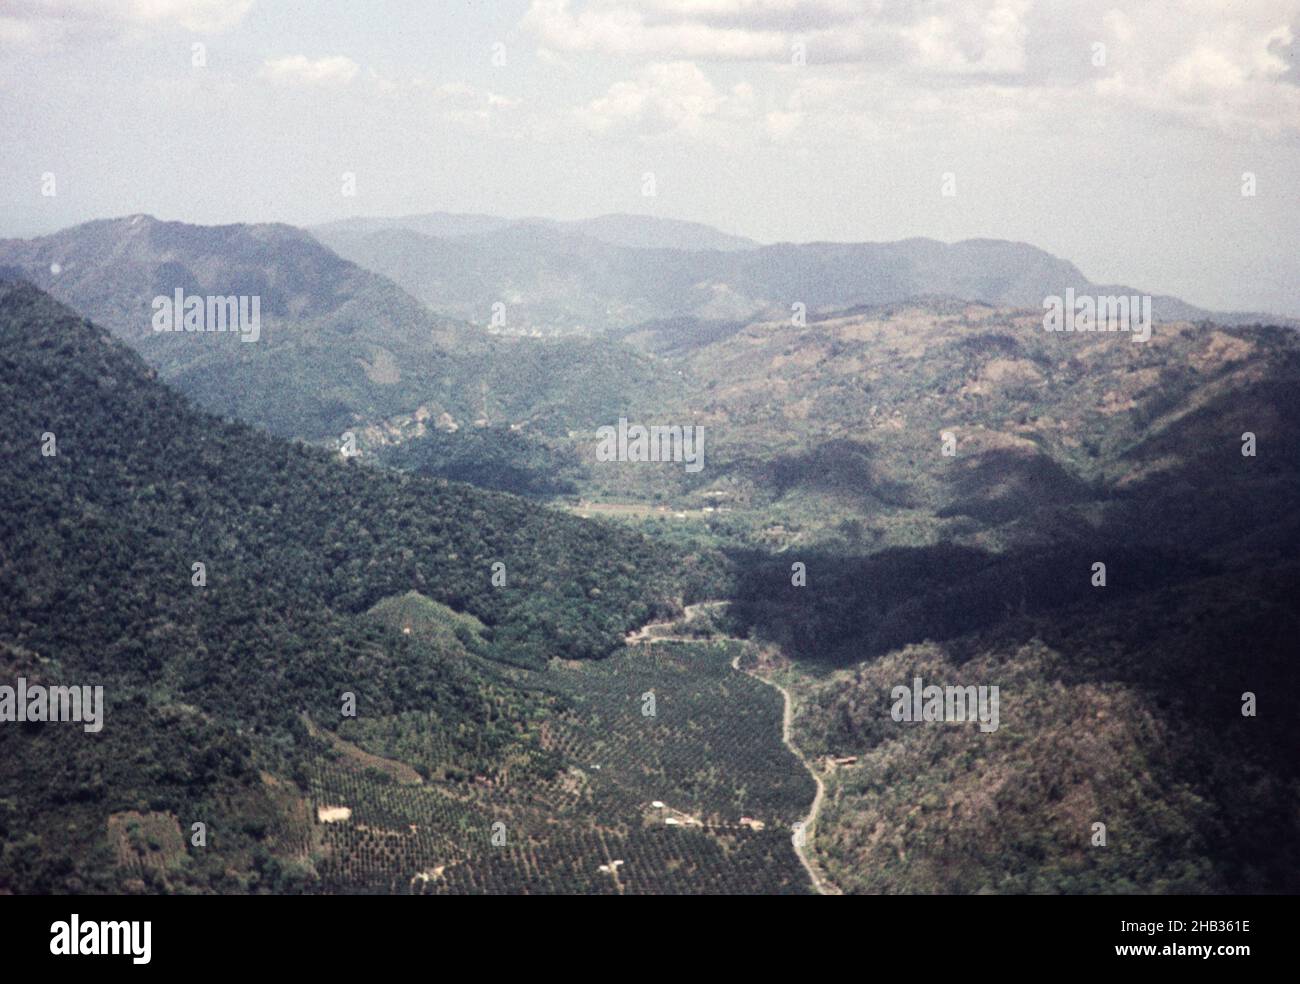 La vallée de Santa Cruz et la route Saddle, notez la plantation d'agrumes en premier plan, Trinidad, c 1962 Banque D'Images